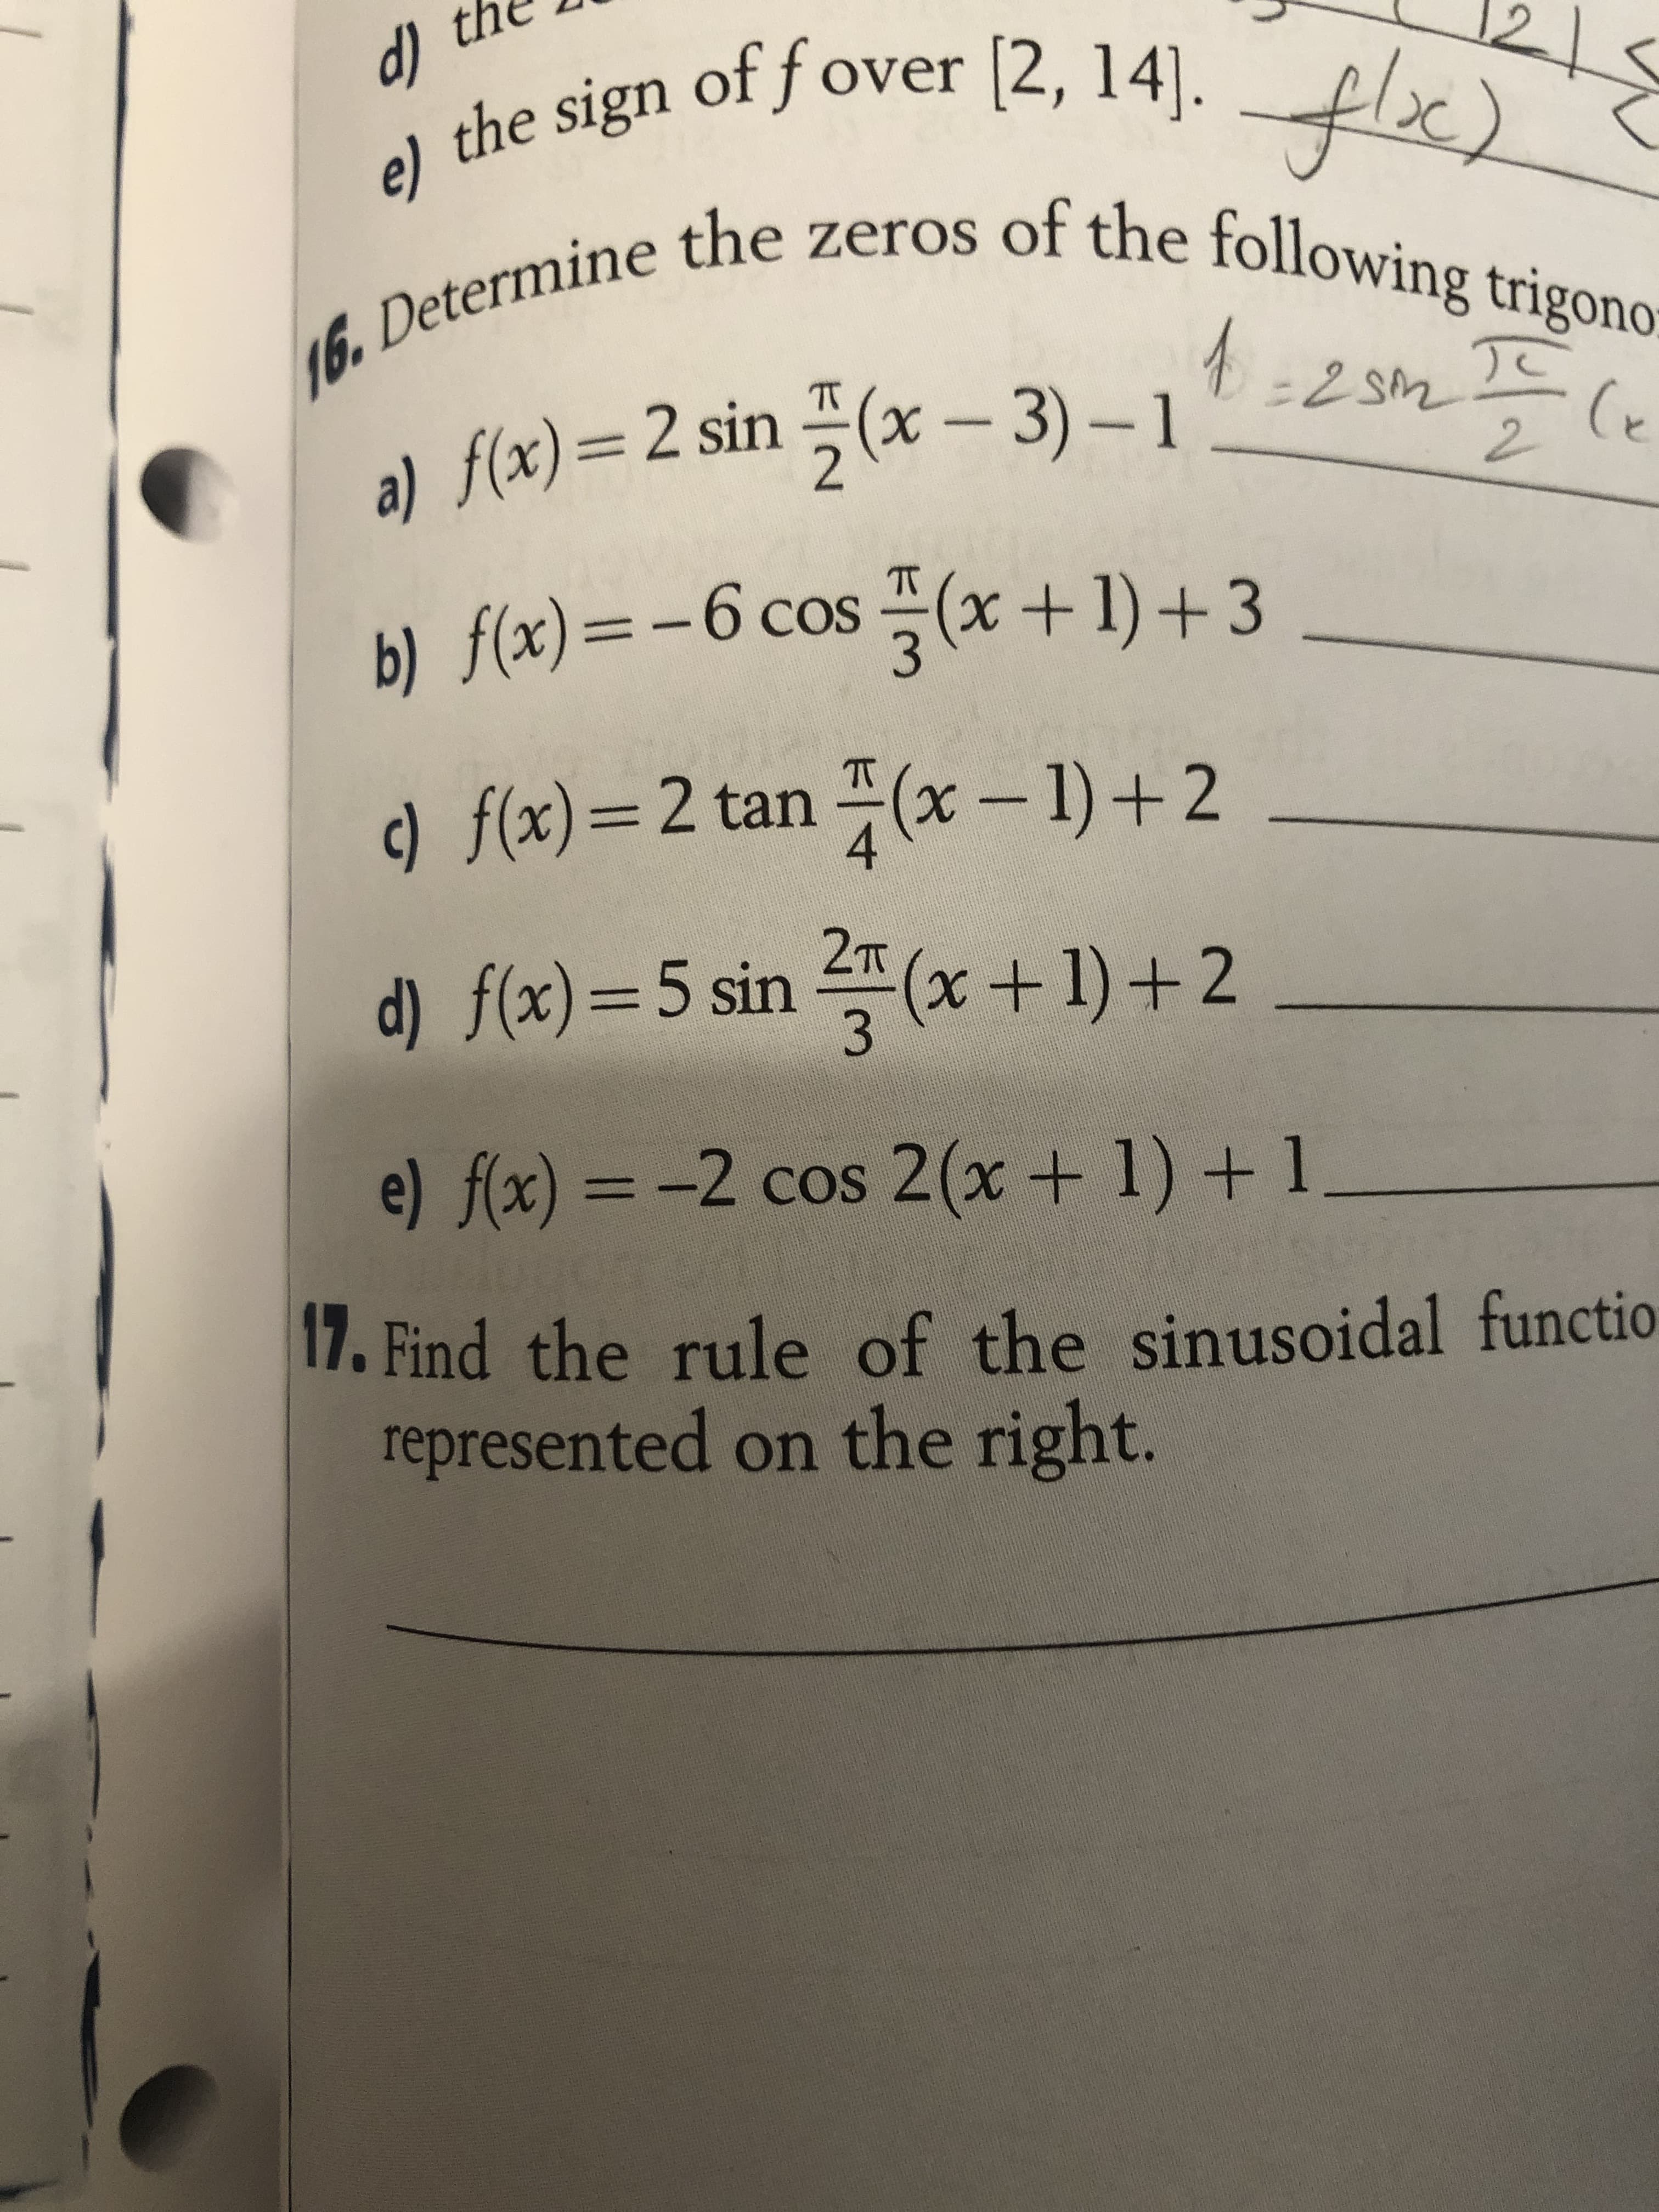 2T
d) f(x)=5 sin (x+1)+2
e) f(x) = -2 cos 2(x+ 1) + 1_
17. Find the rule of the sinusoi
